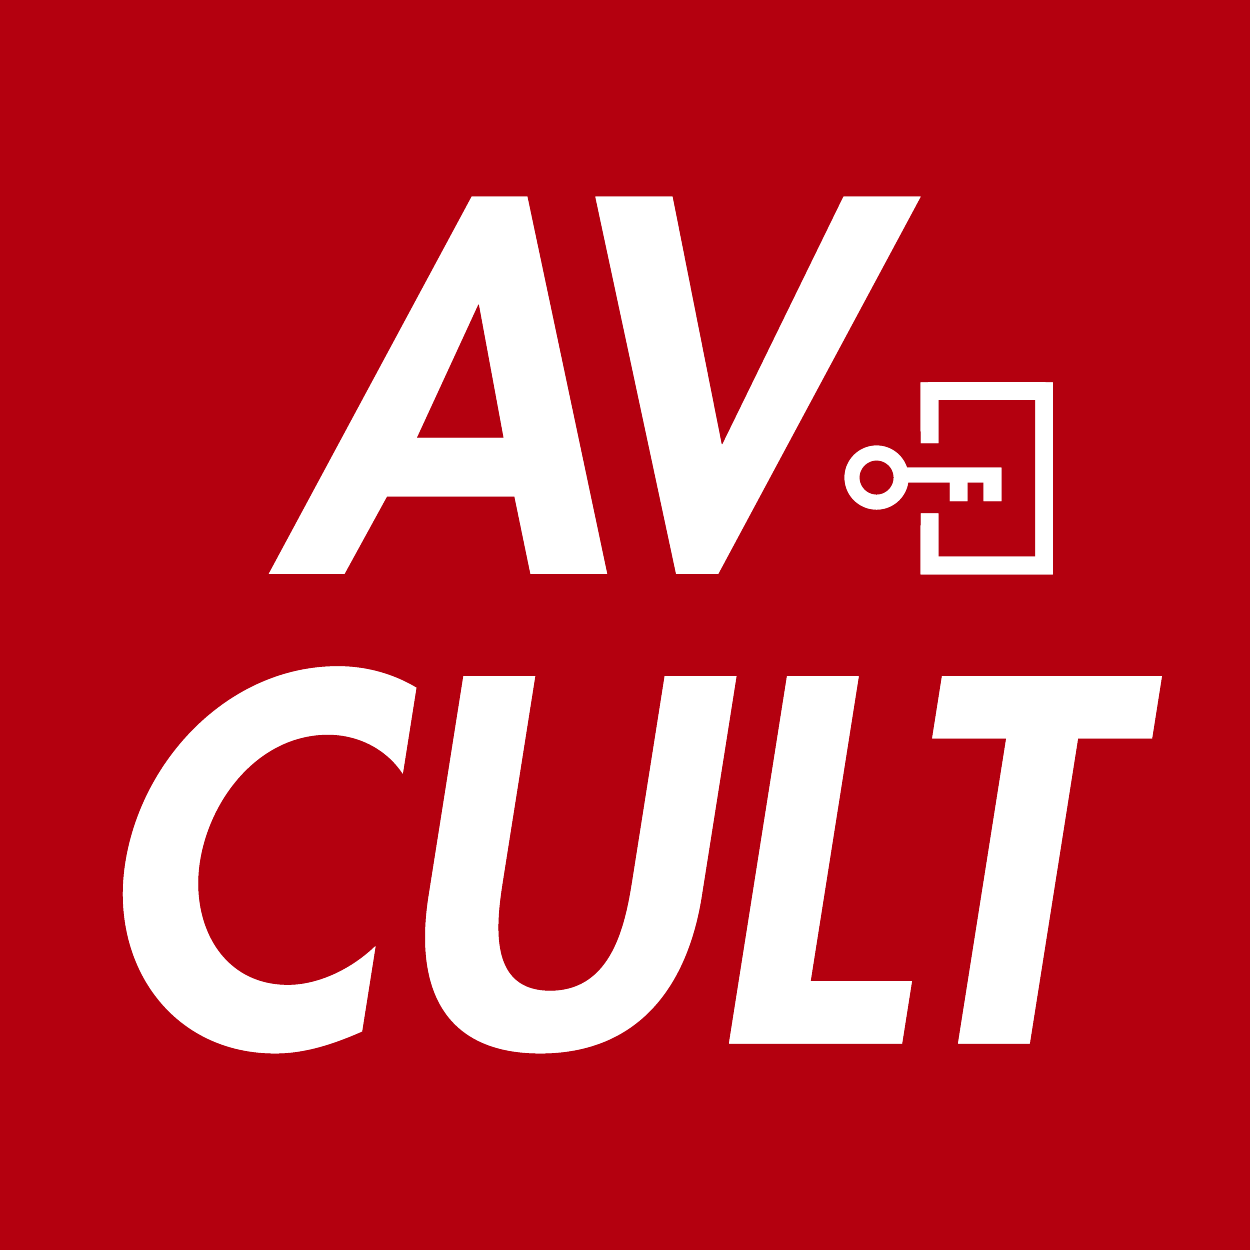 TSE x AV CULT 粉絲見面會 的活動 Logo